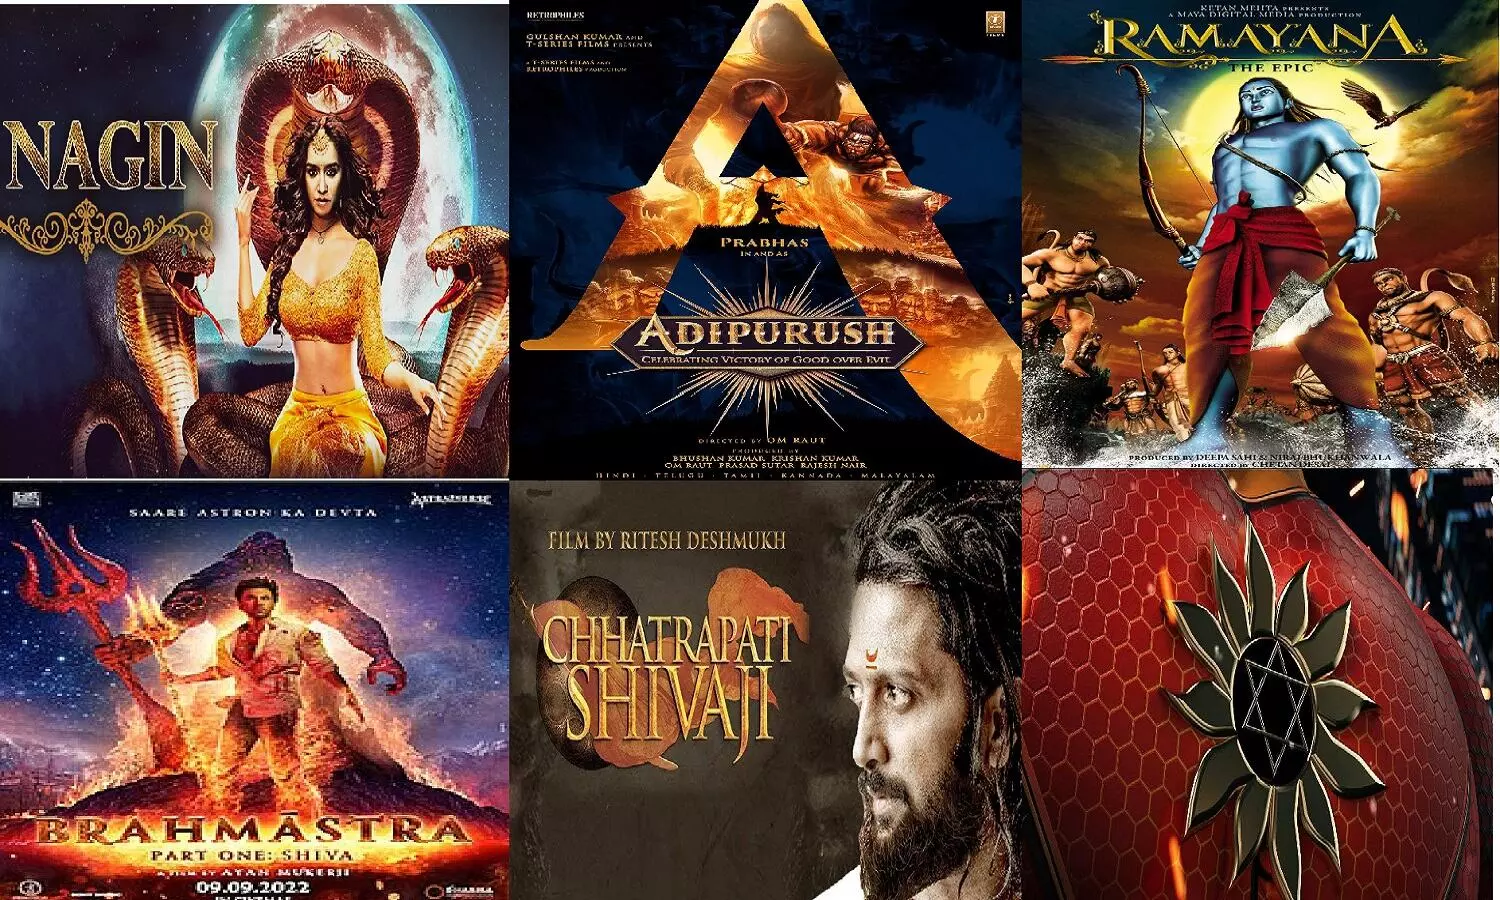 Upcoming Indian Fantasy Movies: ब्रह्मास्त्र के बाद कई धांसू फैंटसी फ़िल्में आने वाली हैं, लिस्ट देख लीजिए